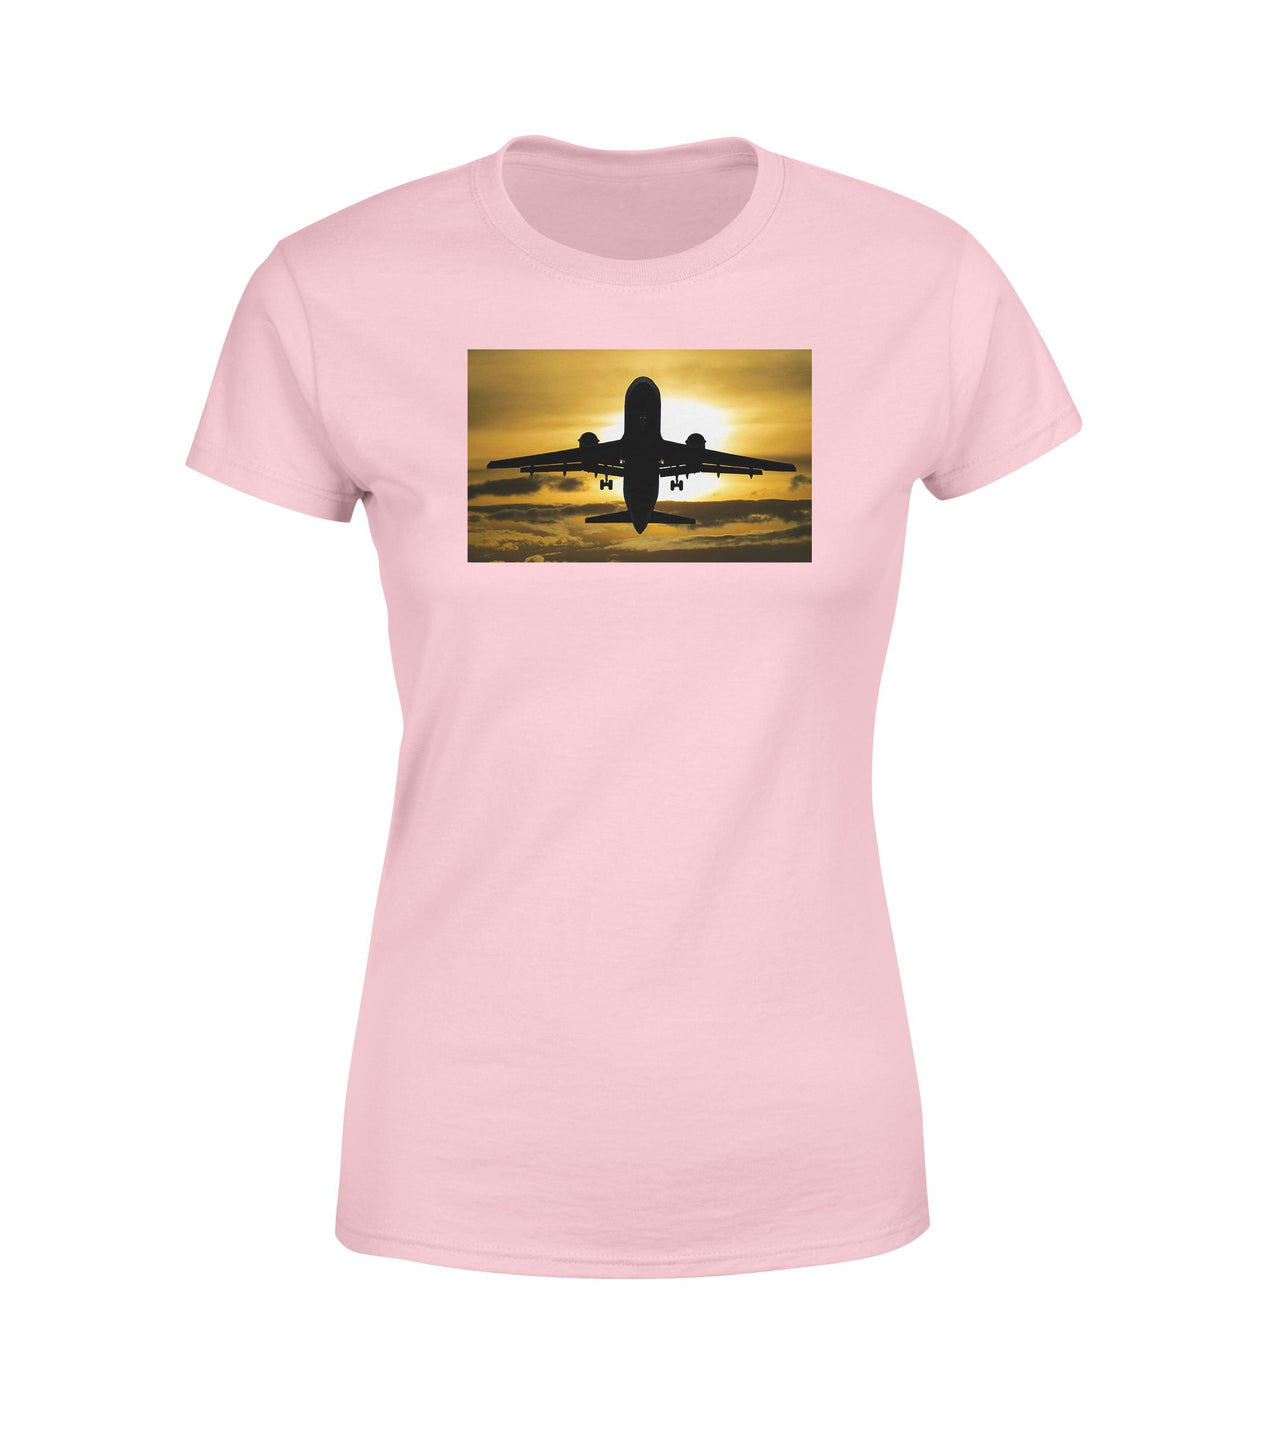 Departing Passanger Jet During Sunset Designed Women T-Shirts